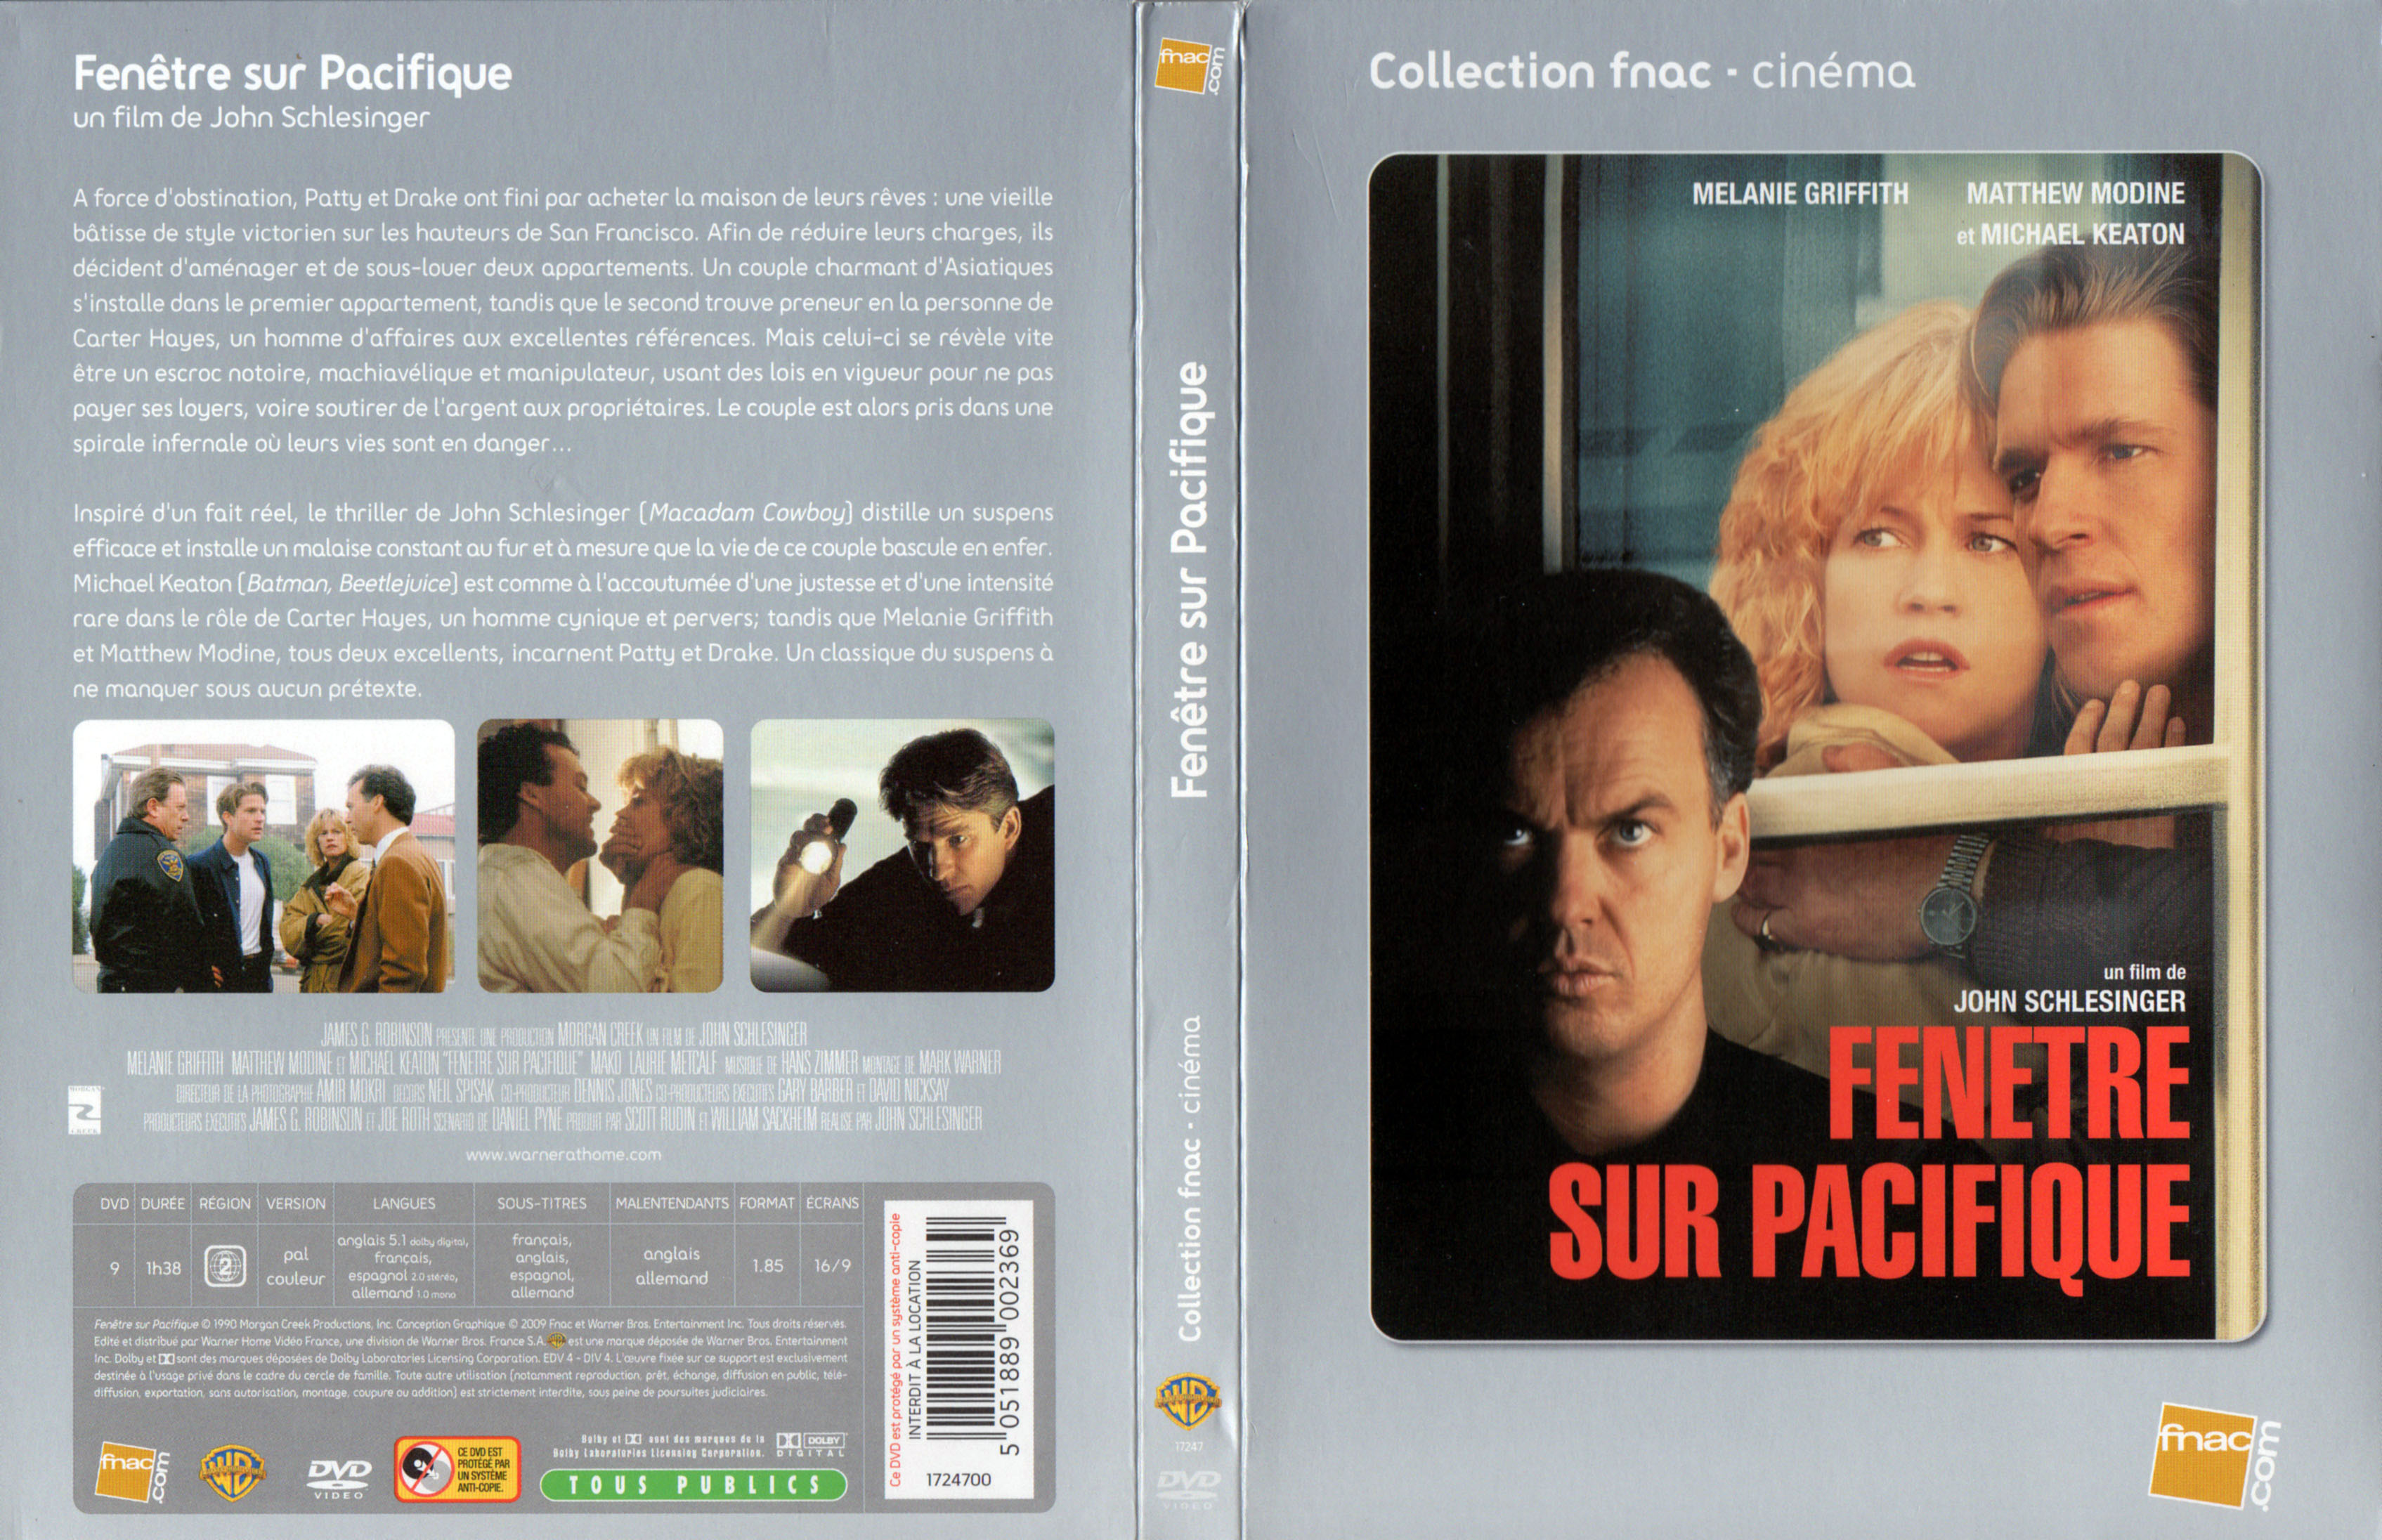 Jaquette DVD Fenetre sur Pacifique v2